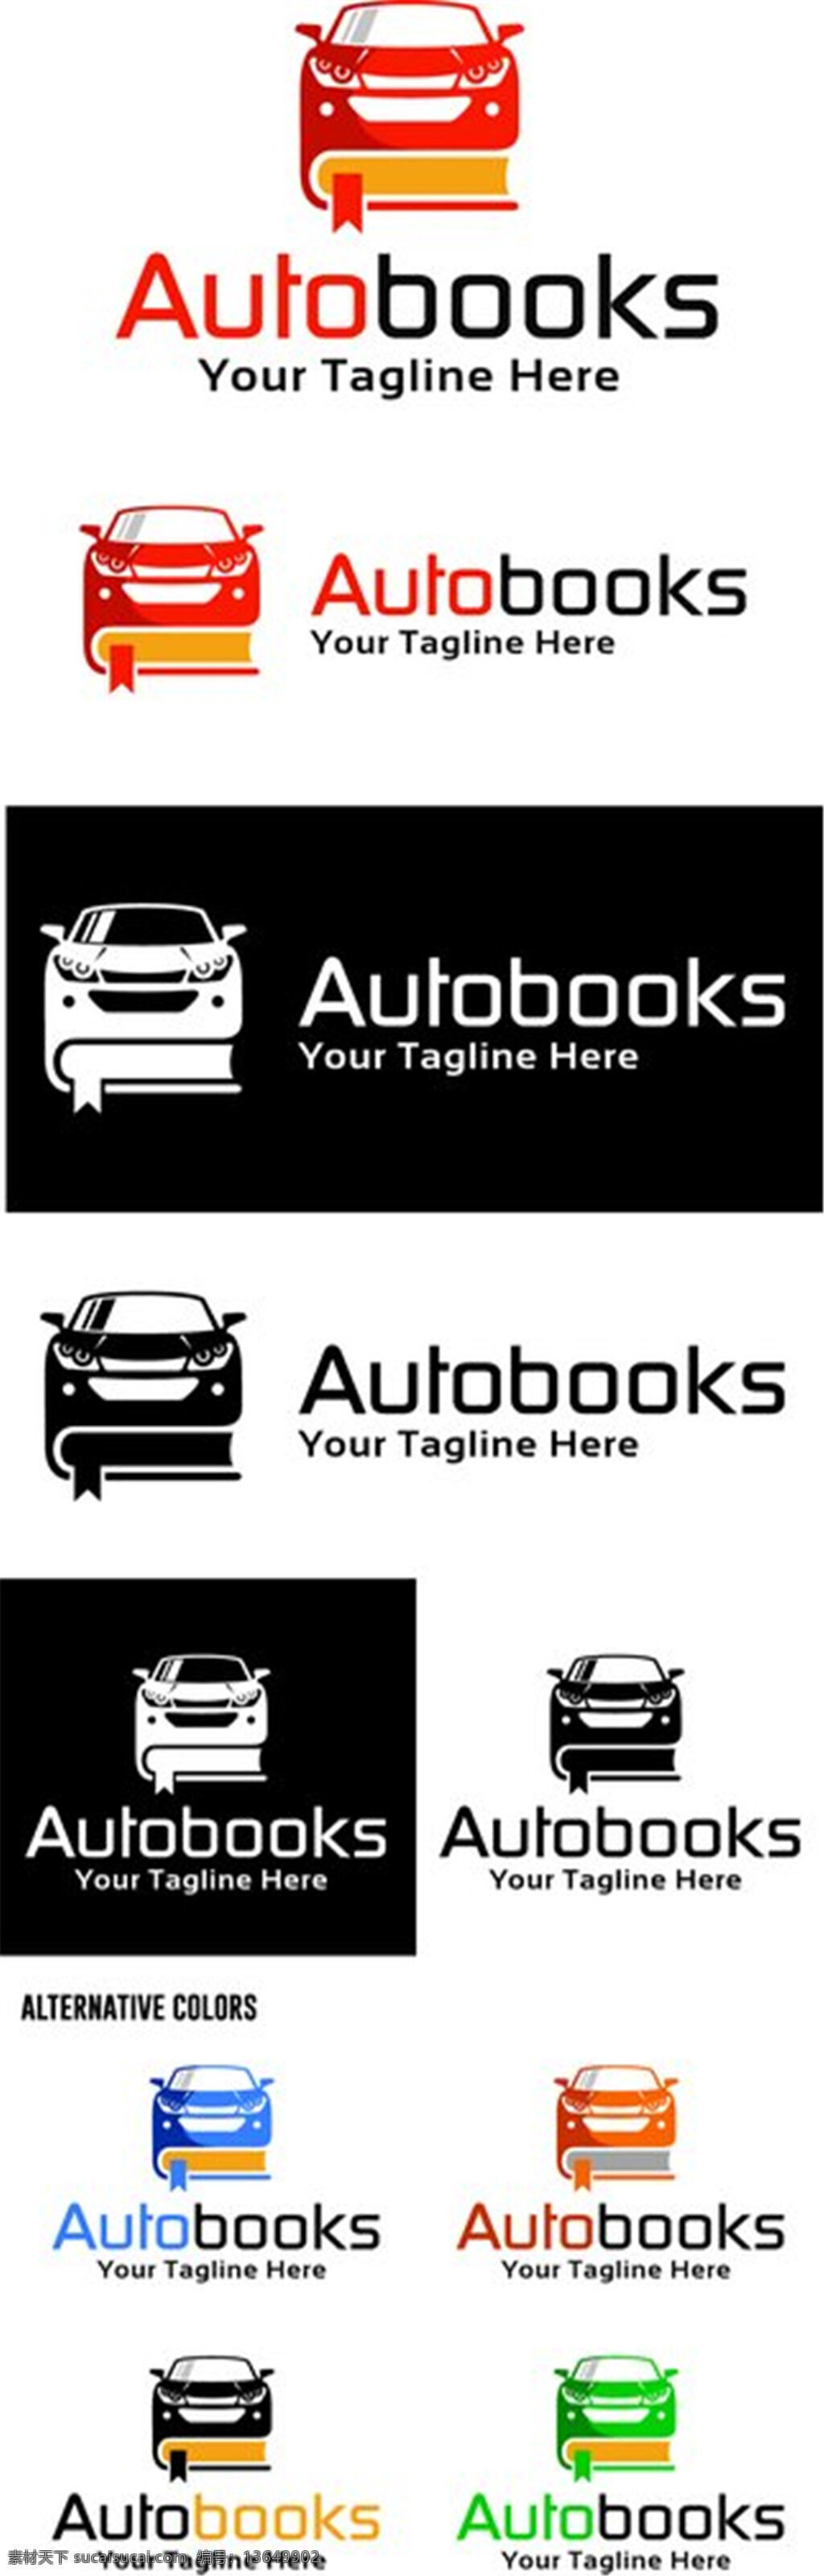 汽车书本标志 标志图片 标志设计 企业logo logo设计 logo 矢量素材 商业标志 标志图片下载 汽车标志 书本标志